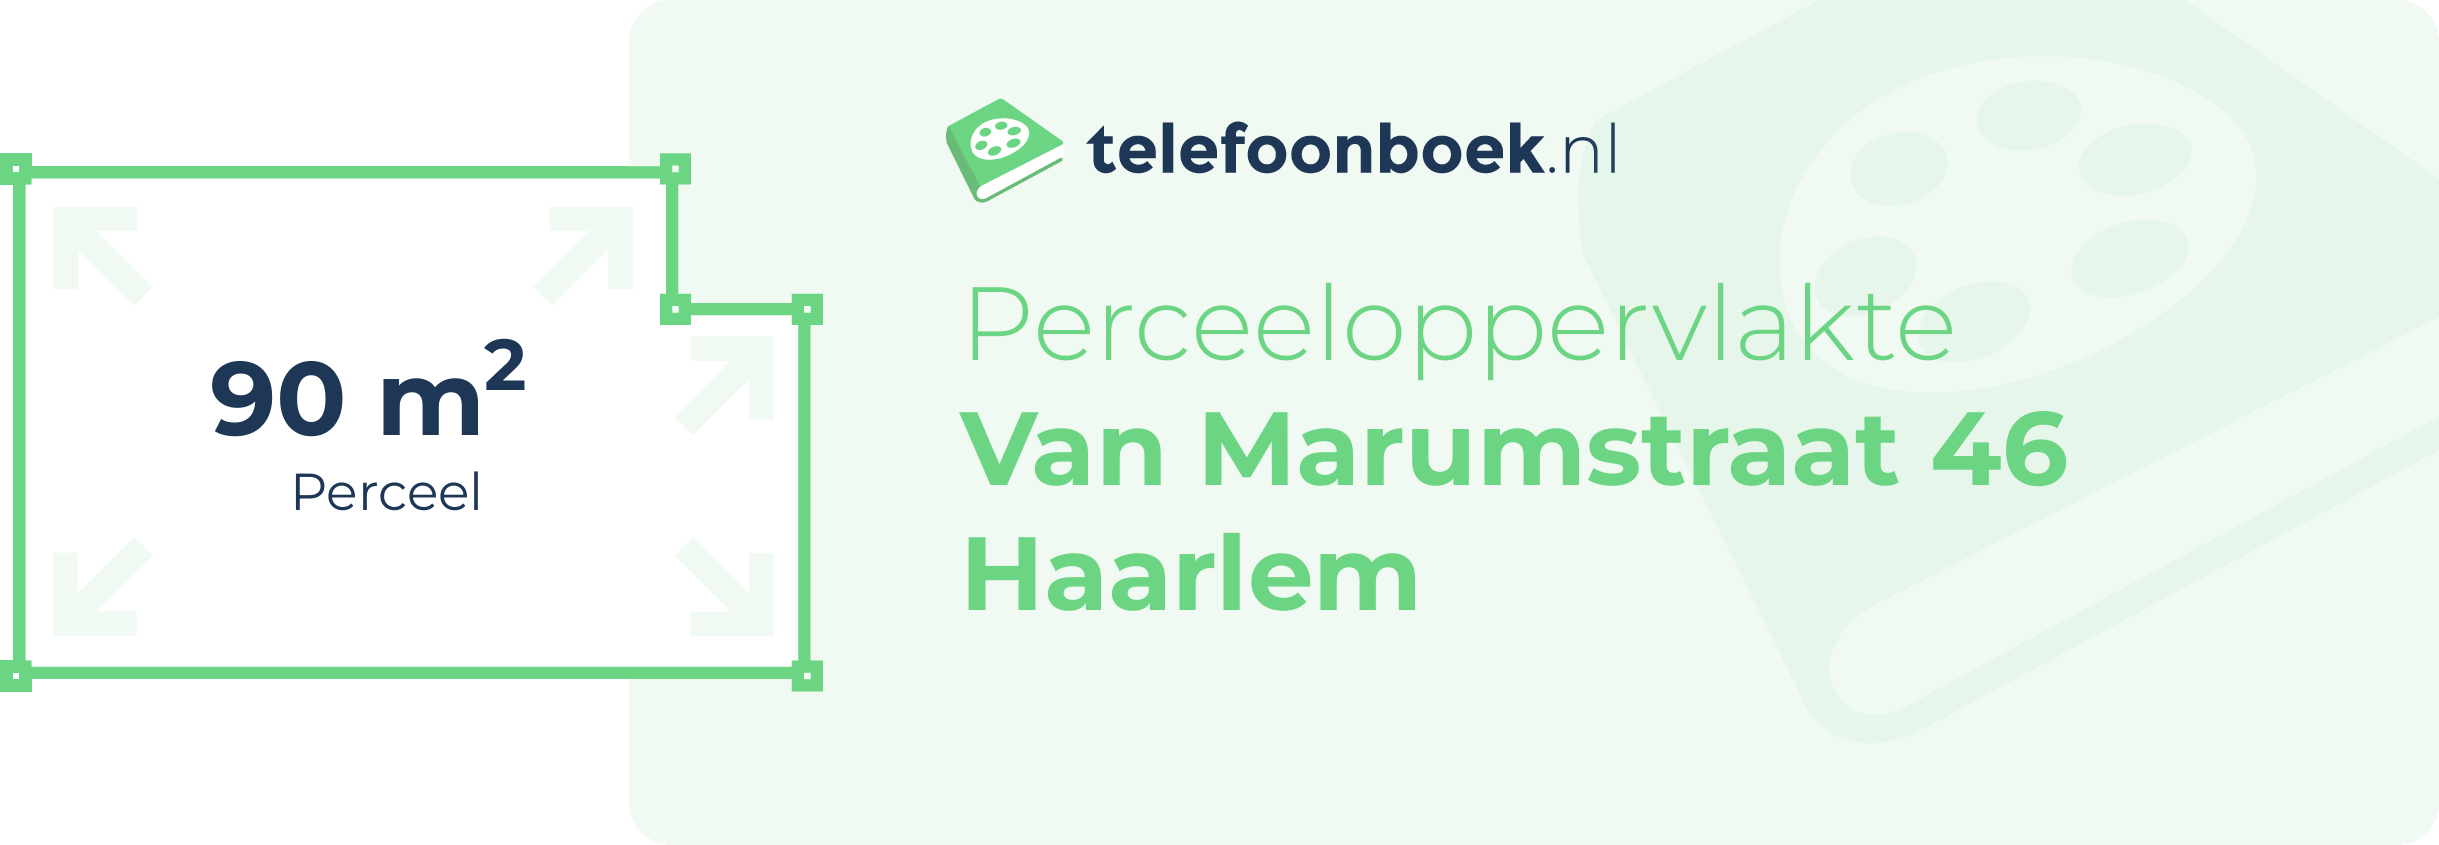 Perceeloppervlakte Van Marumstraat 46 Haarlem